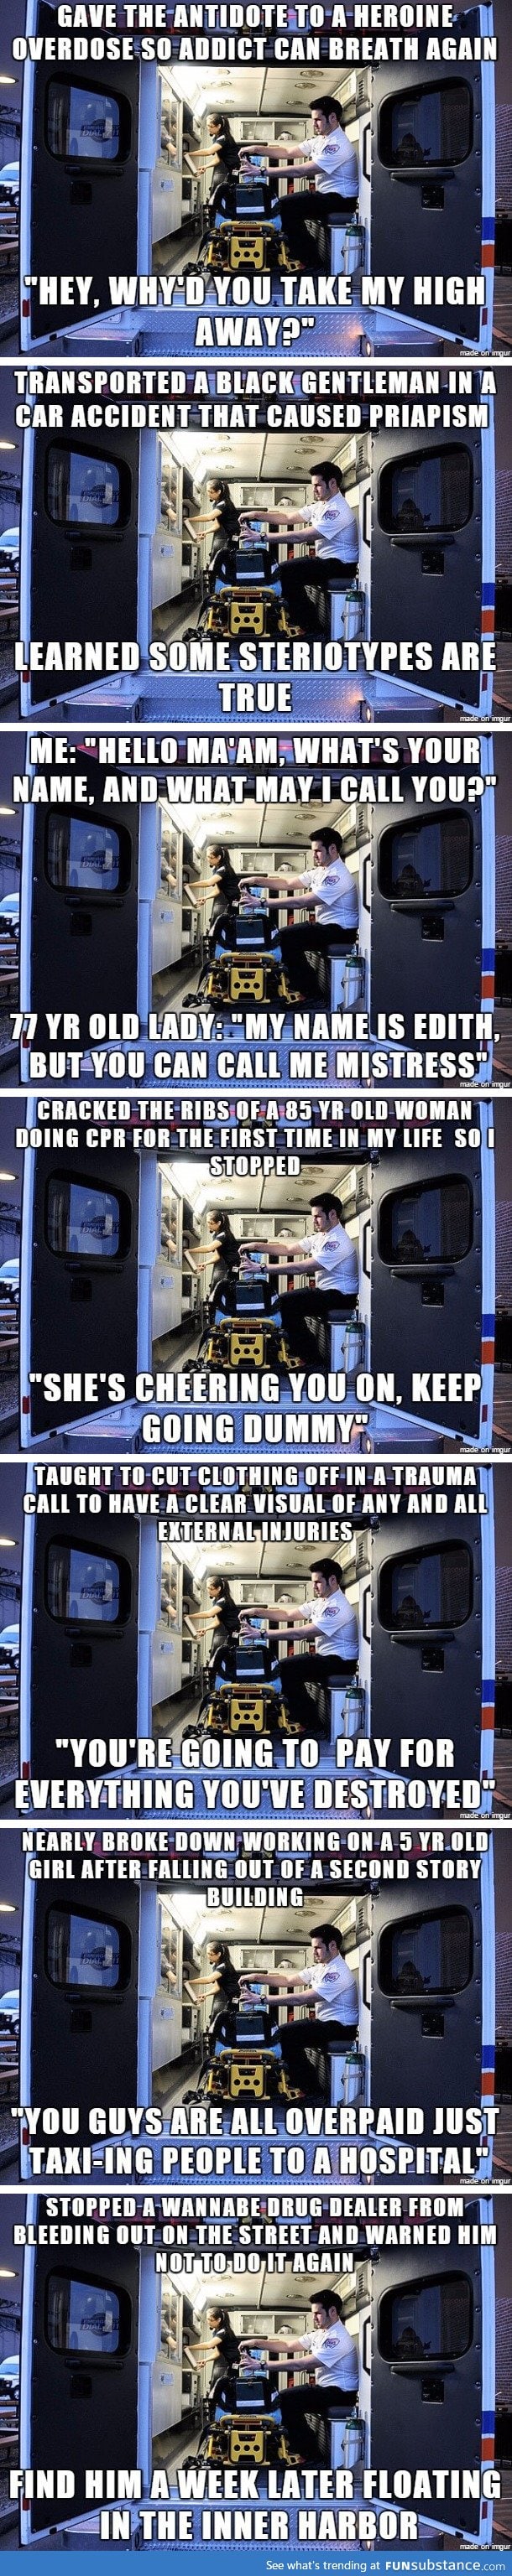 Ambulance stories